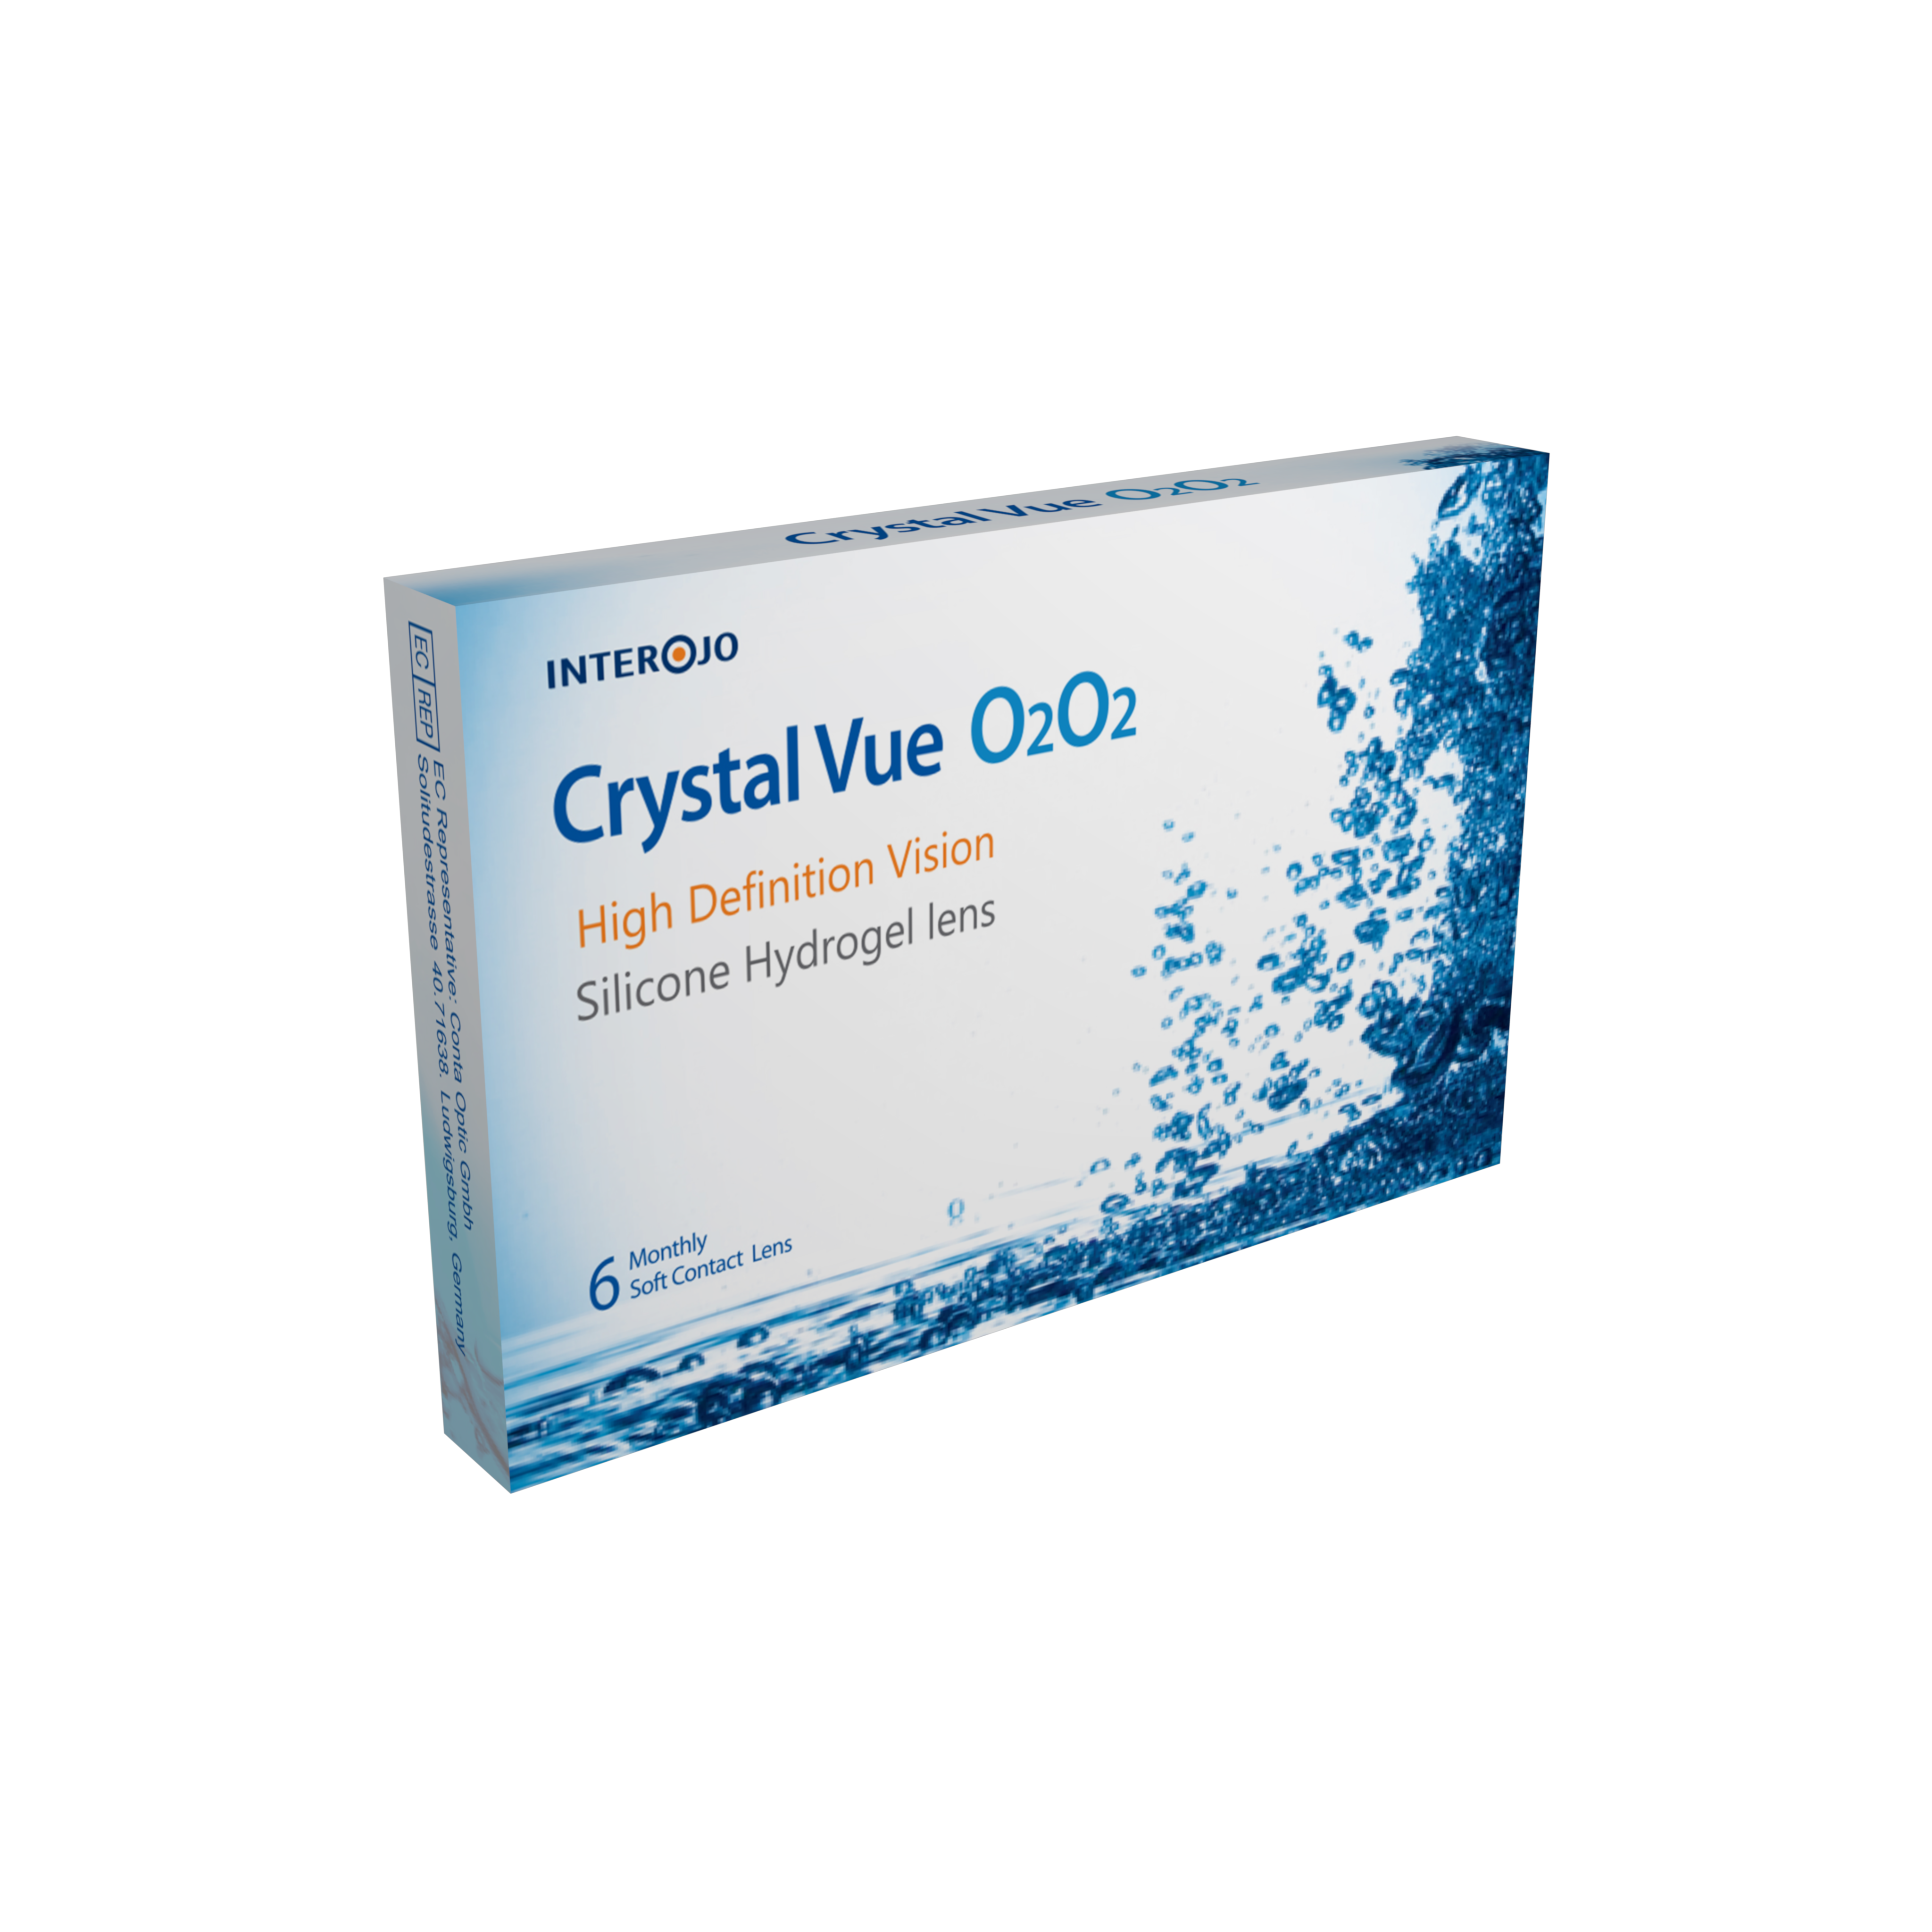 Crystal Vue O2O2